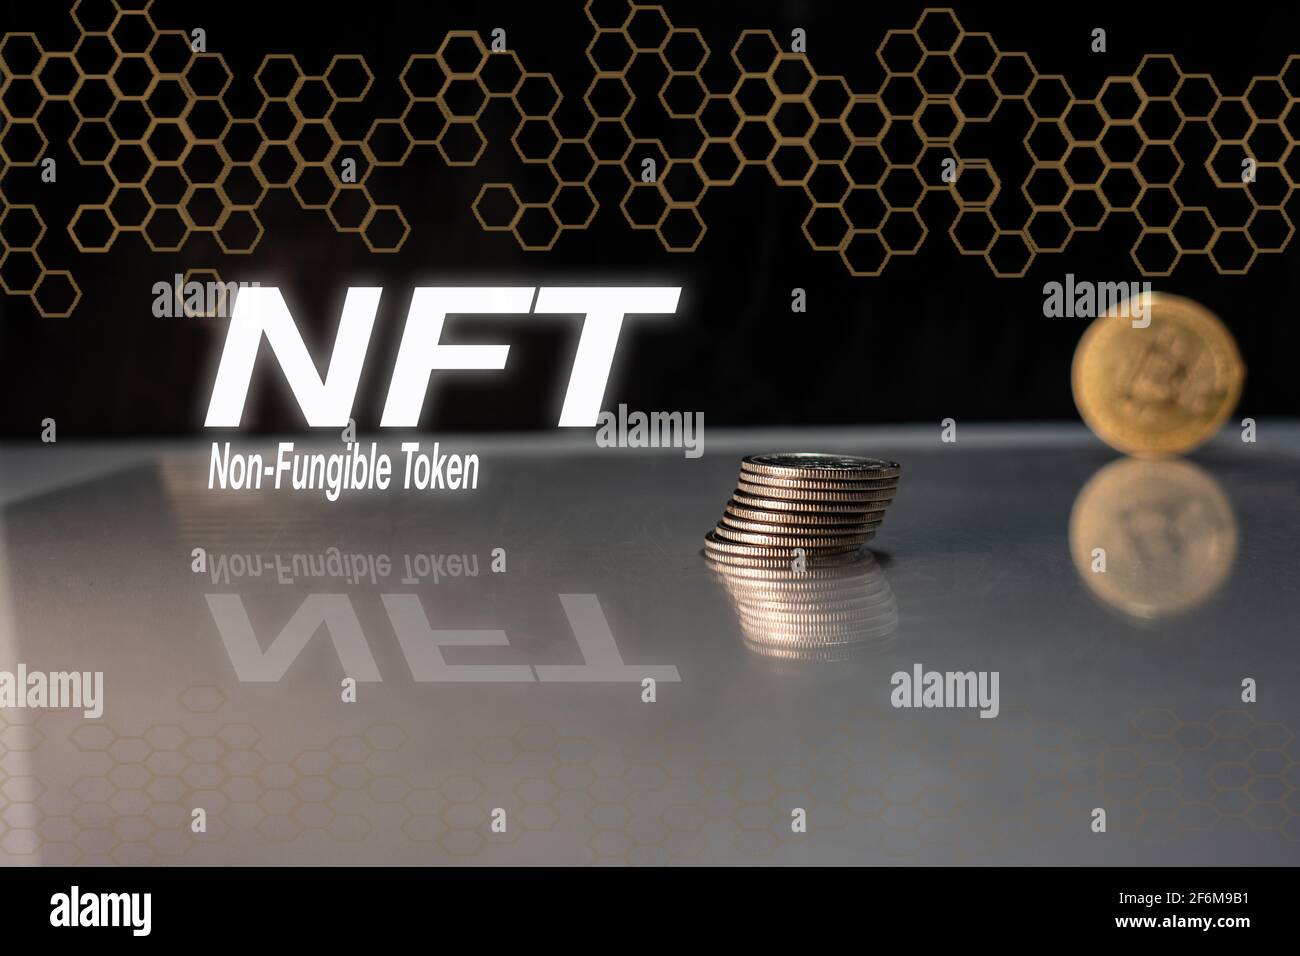 Nicht fungible Token und NFT-Wörter auf schwarzem Hintergrund mit Münzen und sechseckigen Verbindungen, Cyrpto Art, NFT-Konzept Stockfoto